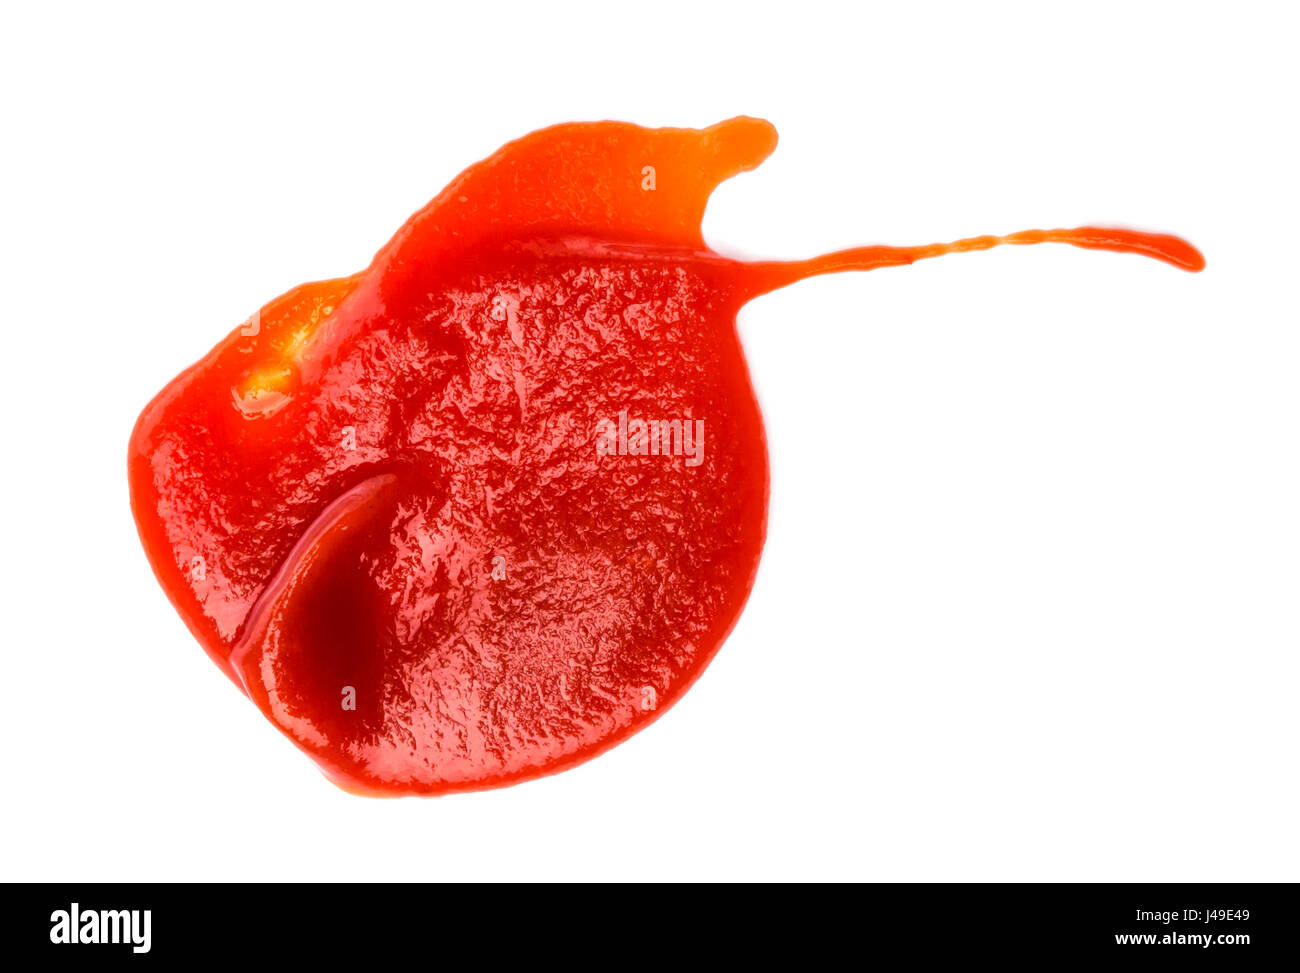 Aislados o en salsa de tomate ketchup. Foto de stock